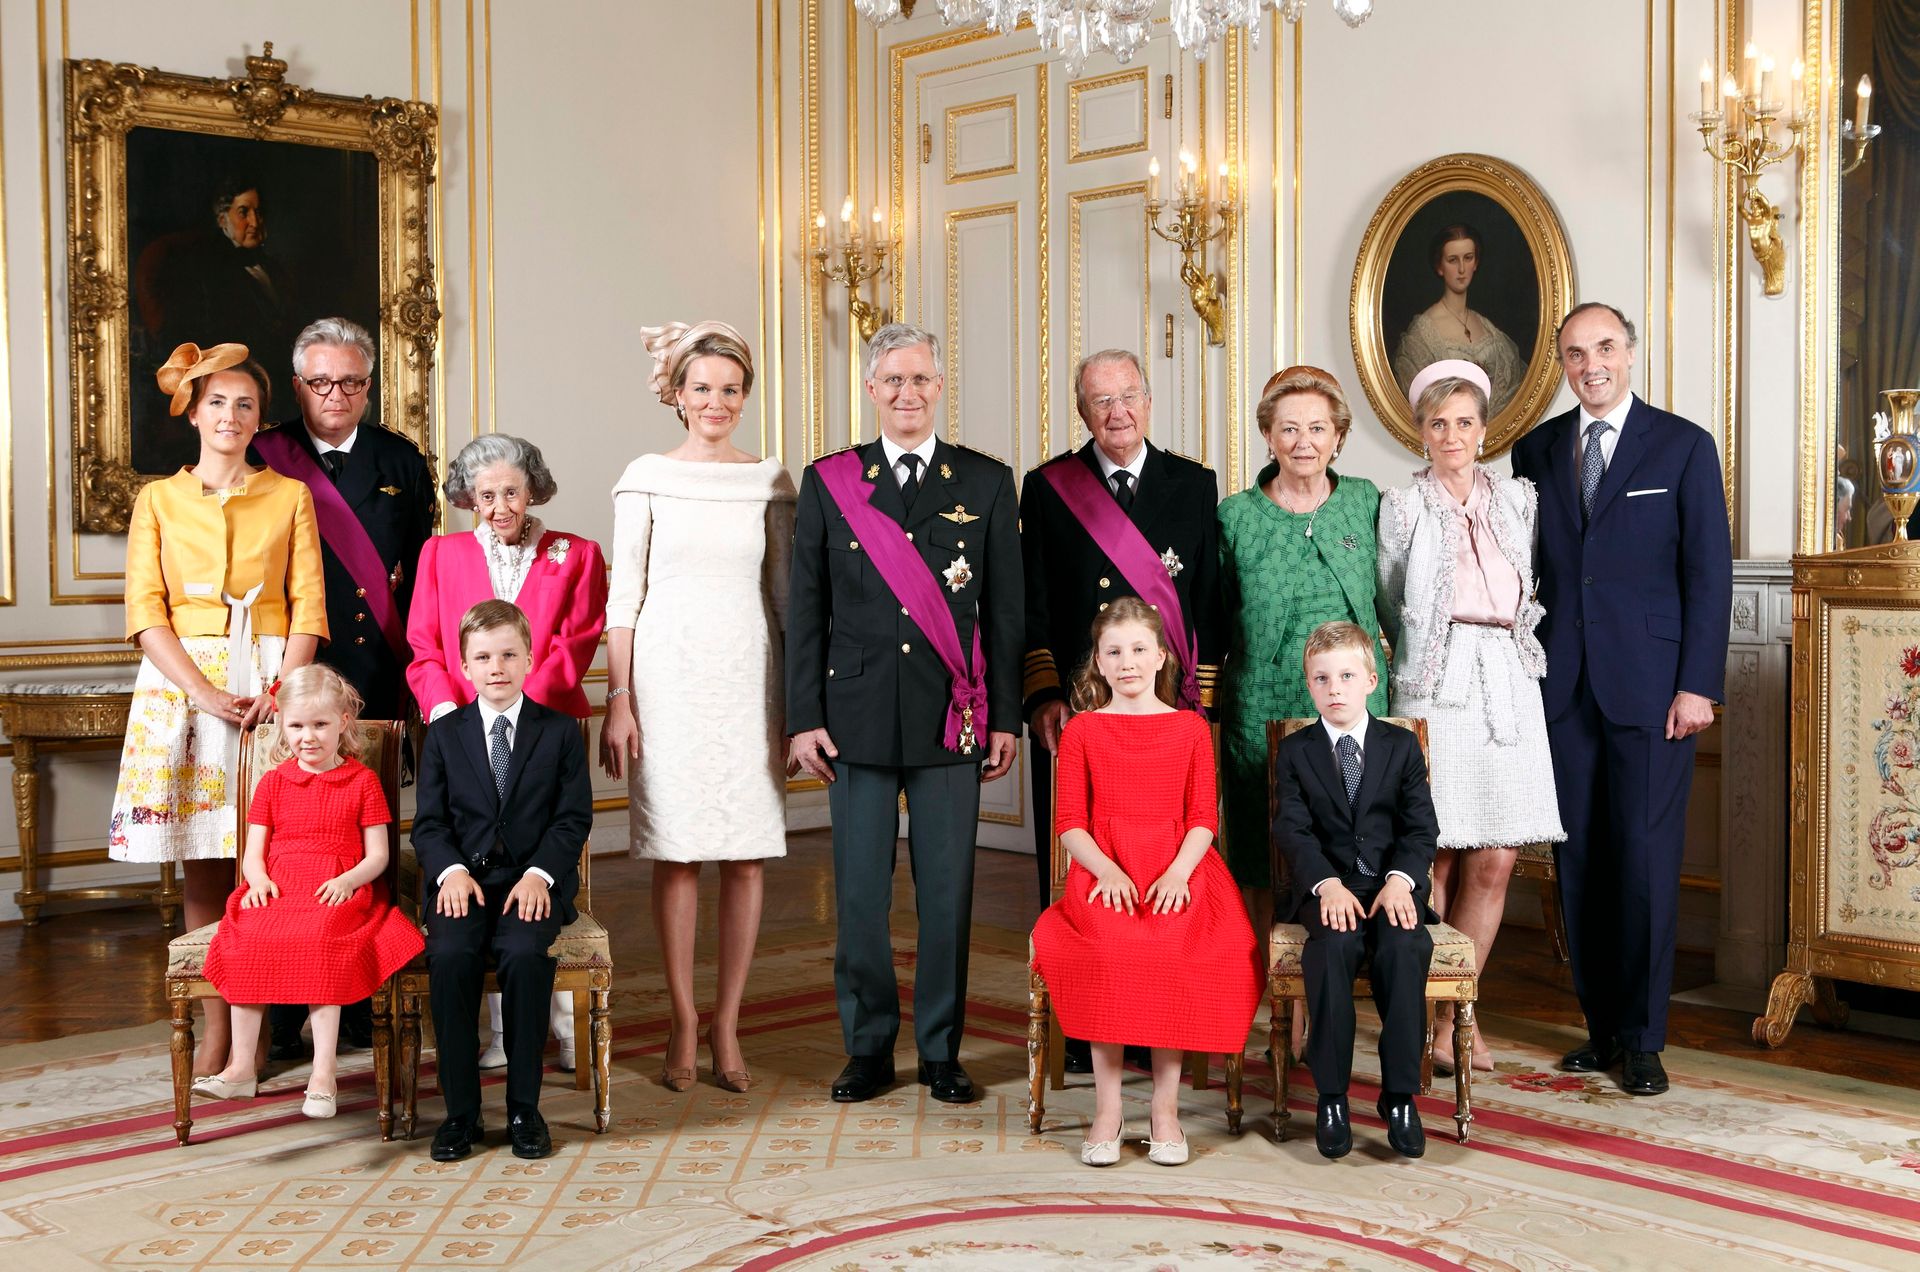 De Belgische koninklijke familie na de inhuldiging van koning Filip in 2013. Op deze dag schoof